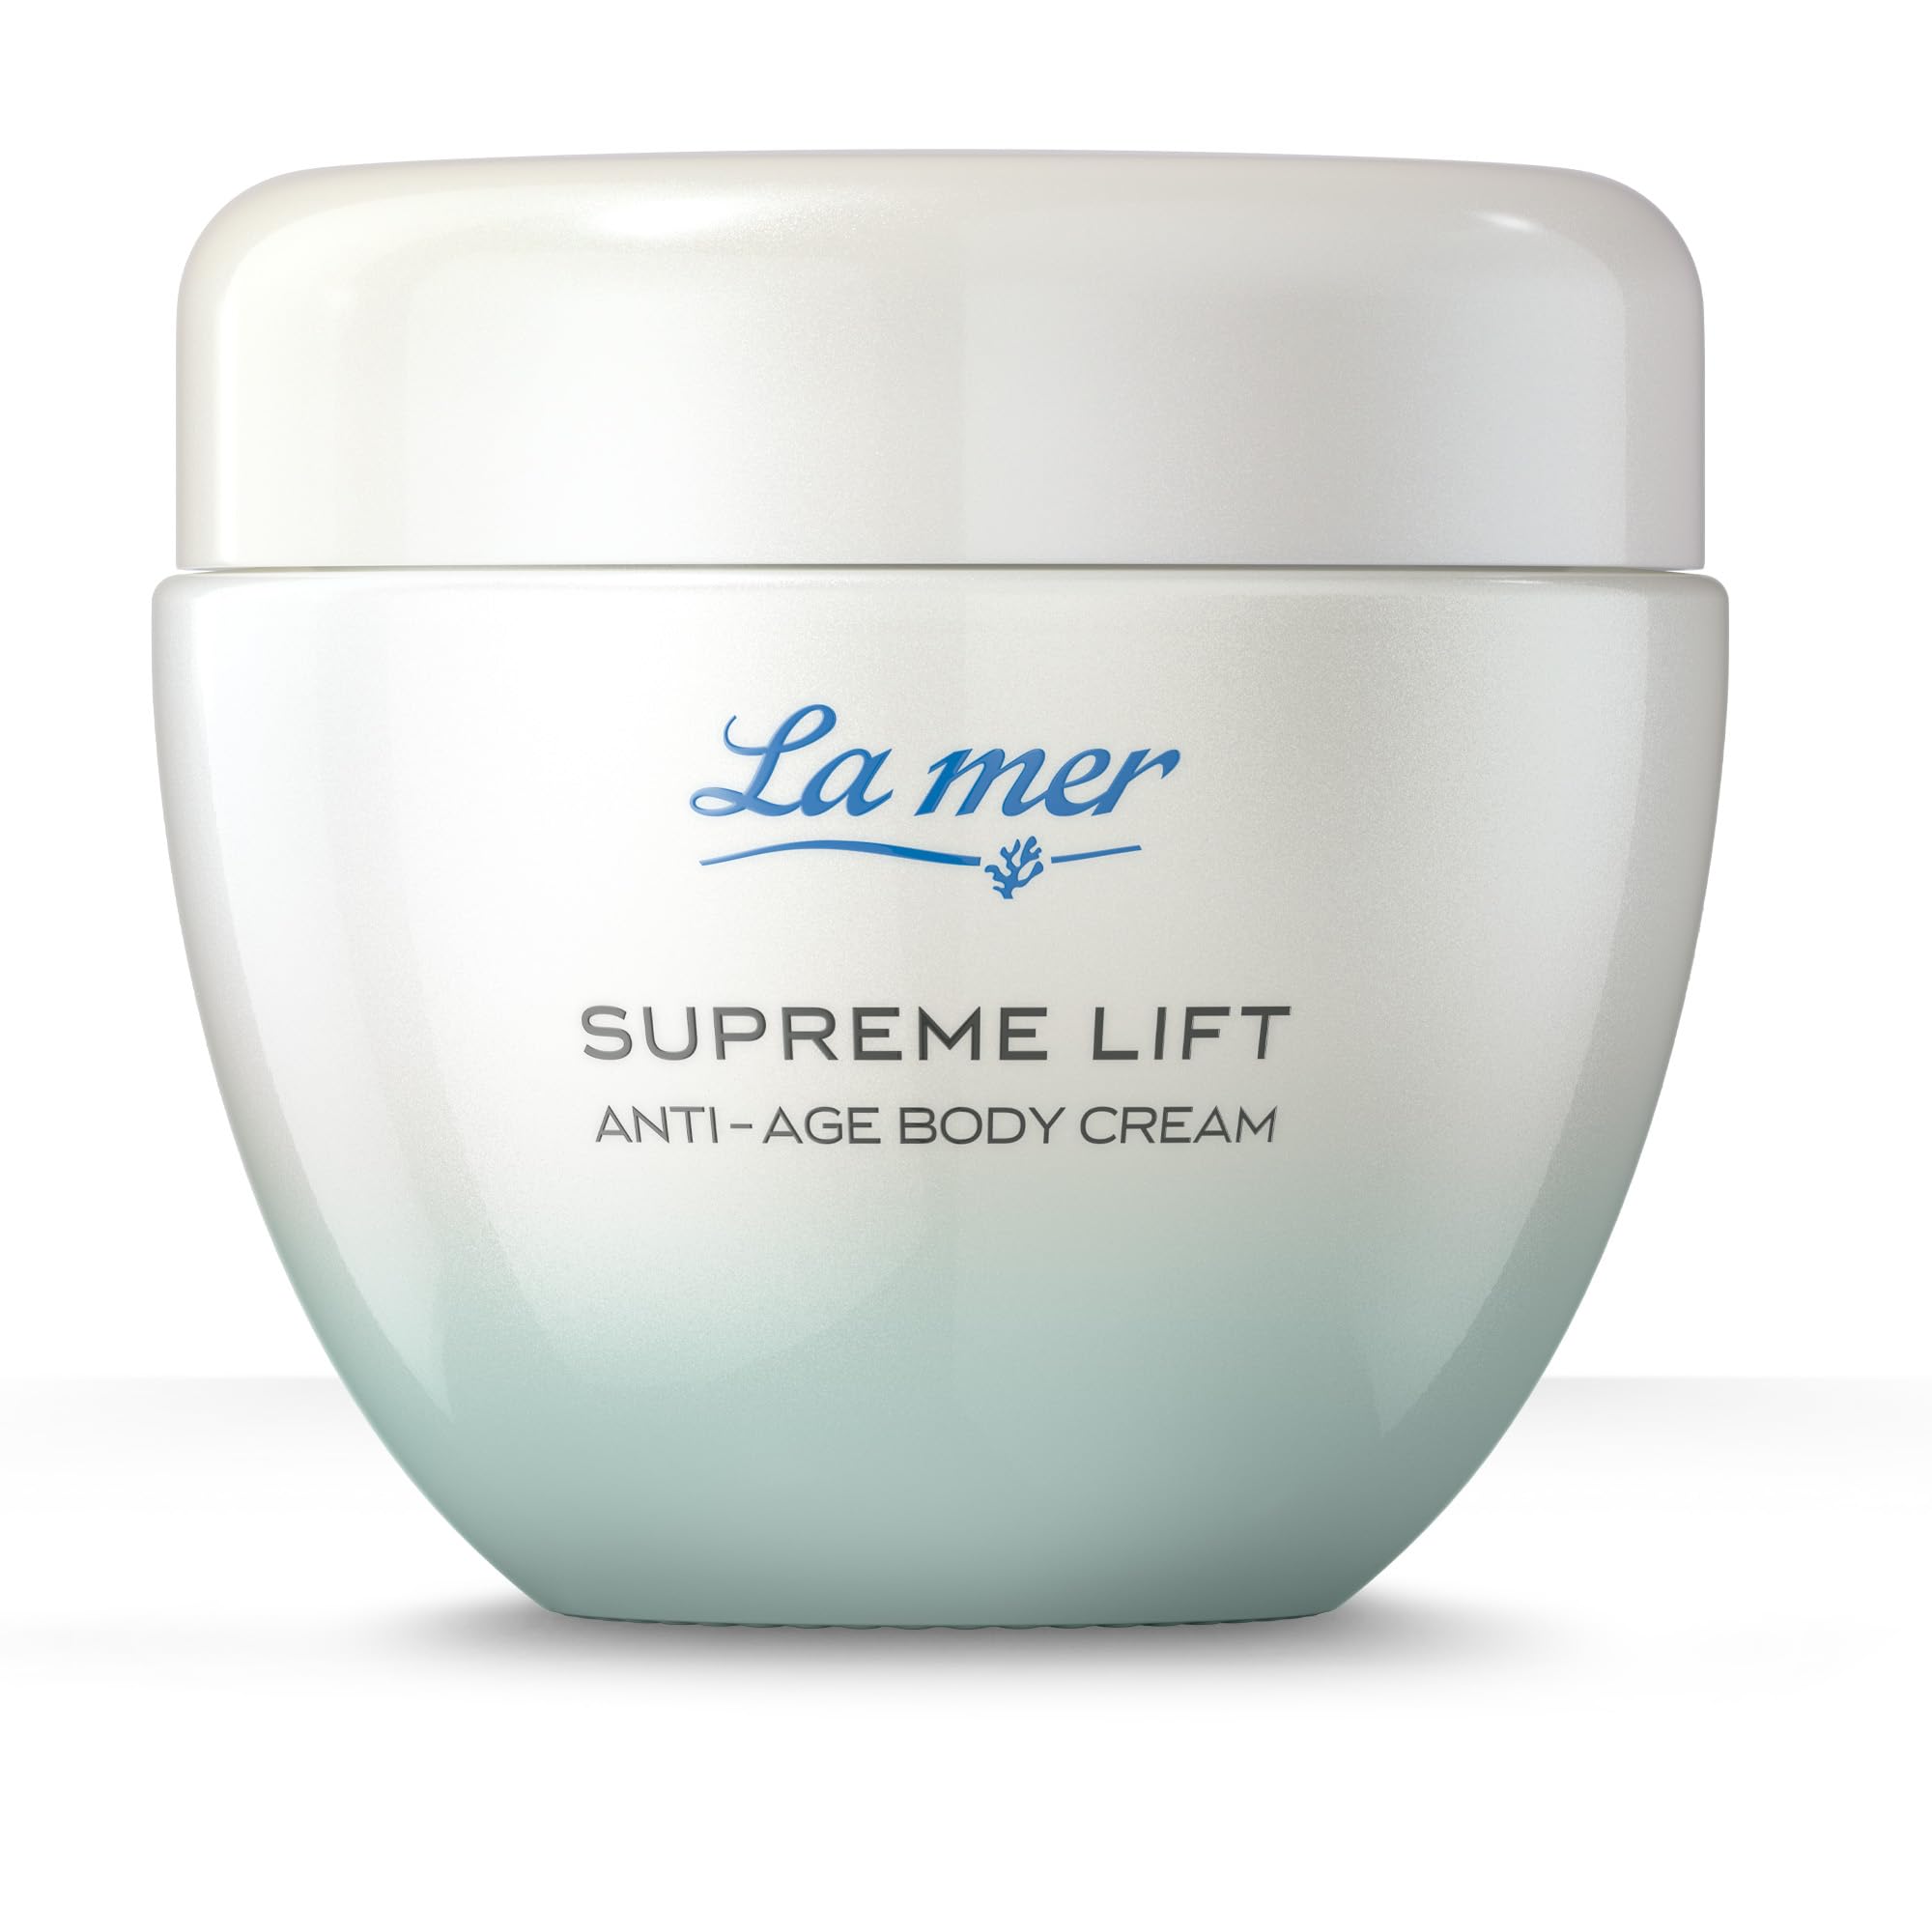 La mer Supreme Lift Anti-Age Body Cream - Verbesserte Rezeptur und Design - Strafft und spendet Feuchtigkeit für den Körper - Verbessert die Elastizität des Bindegewebes - Glättet und festigt - 200 ml